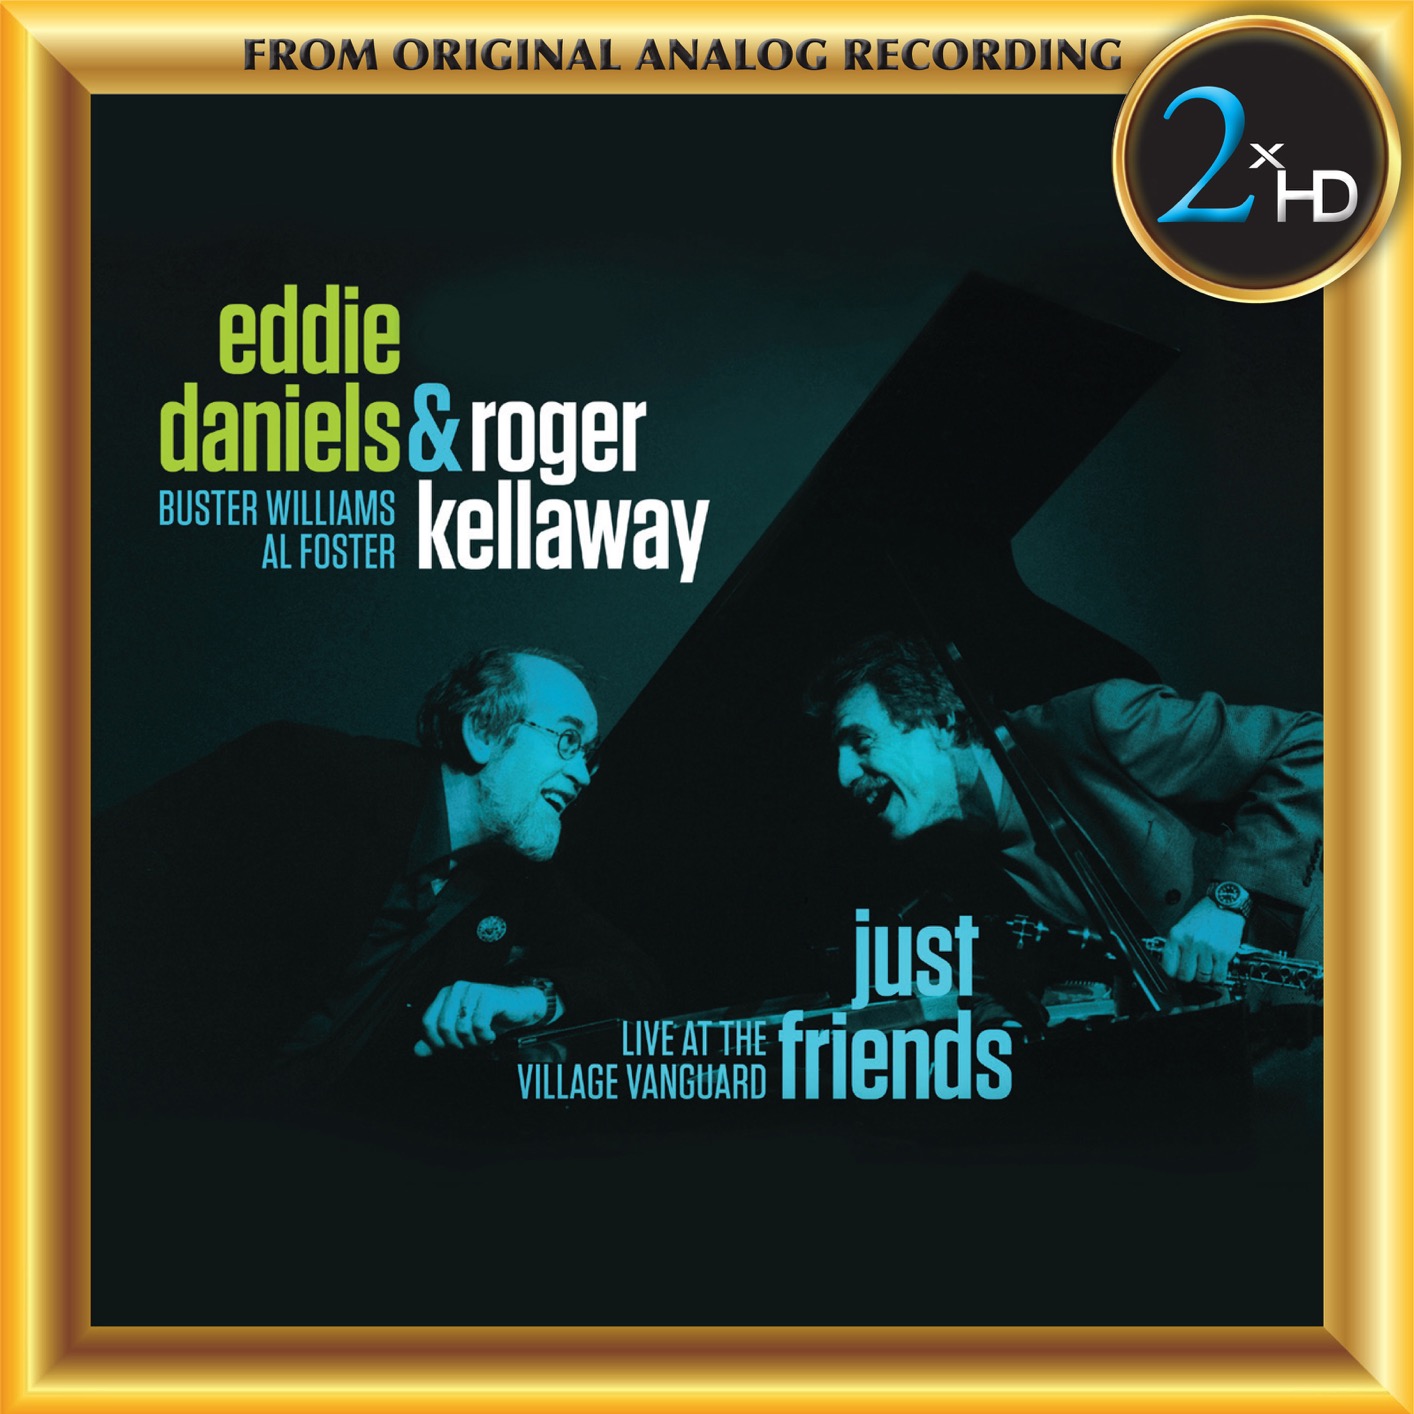 Eddie Daniels & Roger Kellaway - Just Friends - Live at the Village Vanguard (2018) [FLAC 24bit/192kHz]